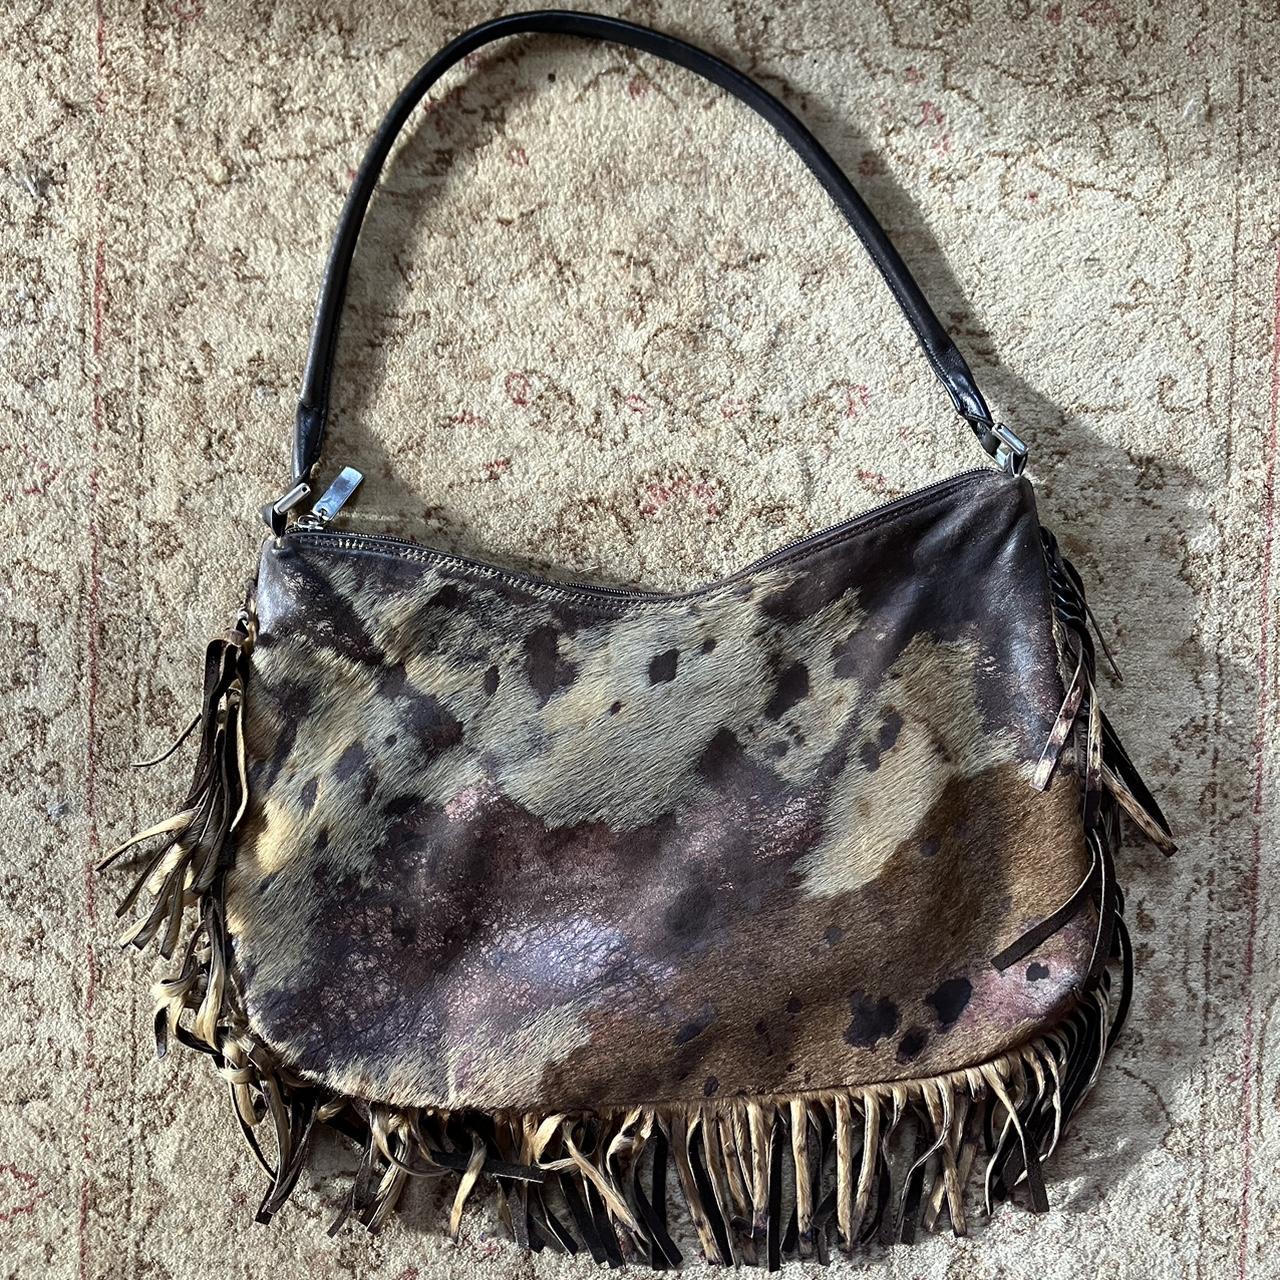 Vintage fur leather fringe purse. Crossbody or - Depop